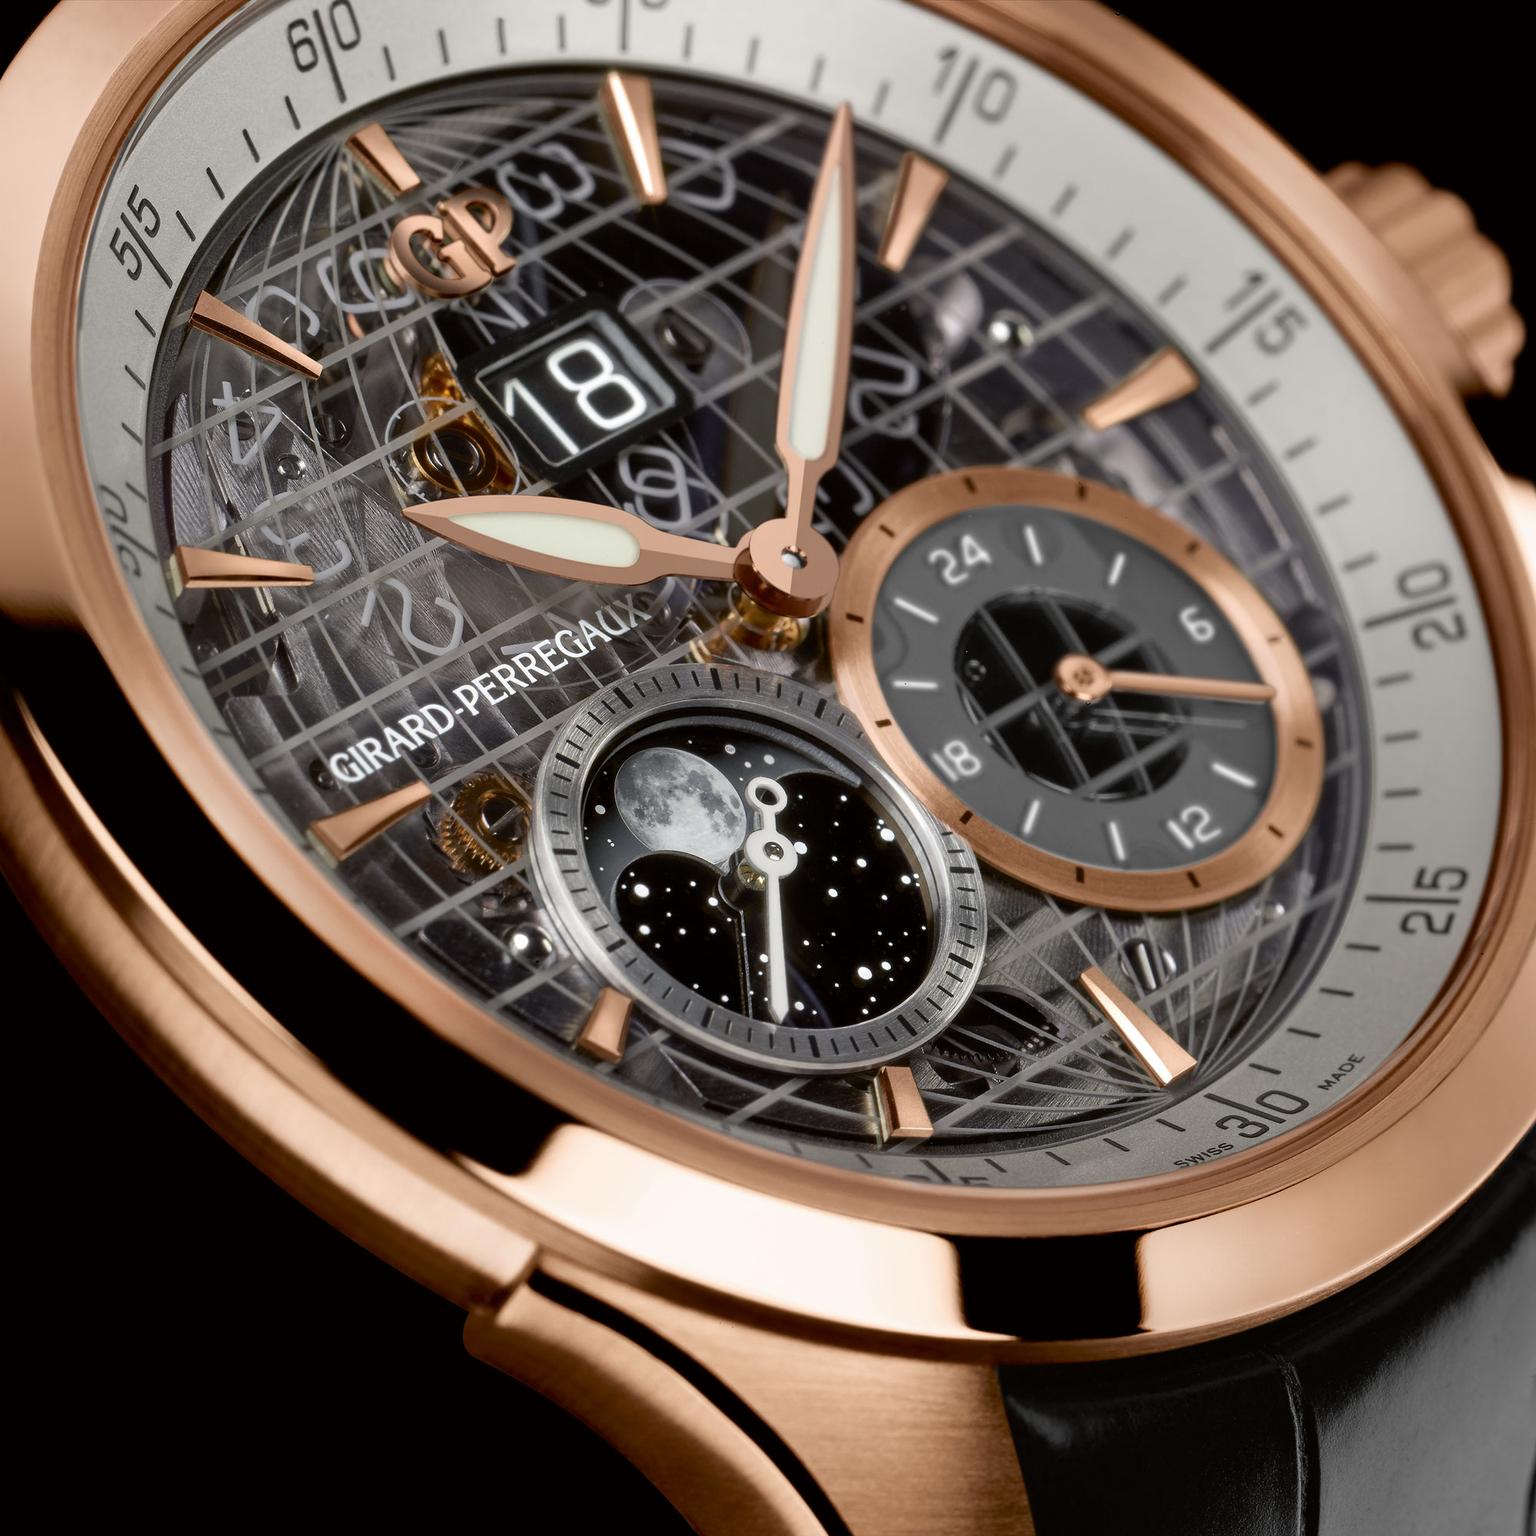 Girard Perreagaux Traveller GMT watch